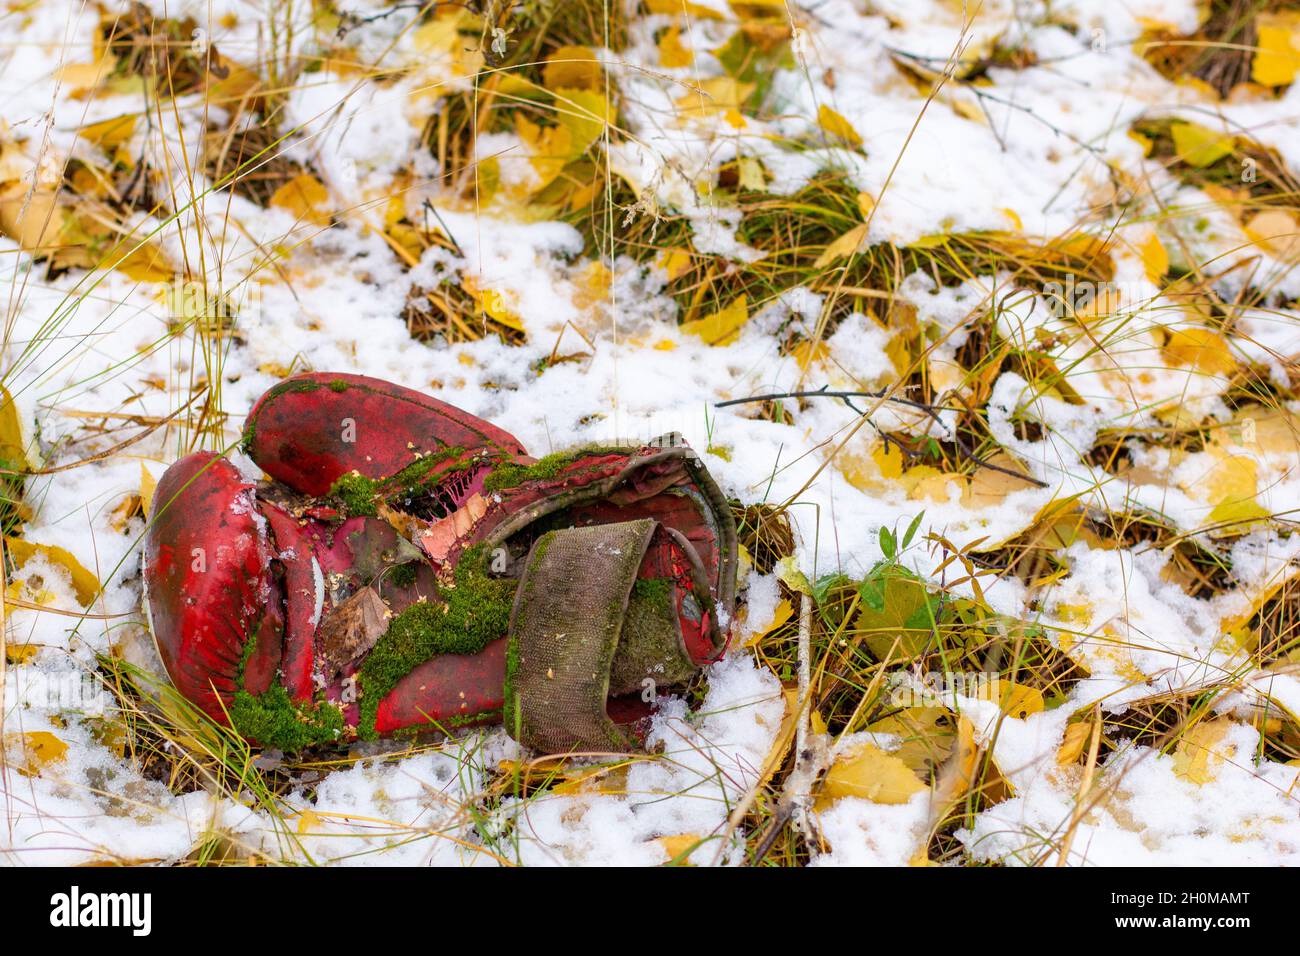 Vieux gant de boxe recouvert de mousse se trouve entre les feuilles mortes sur la première neige d'automne. Banque D'Images